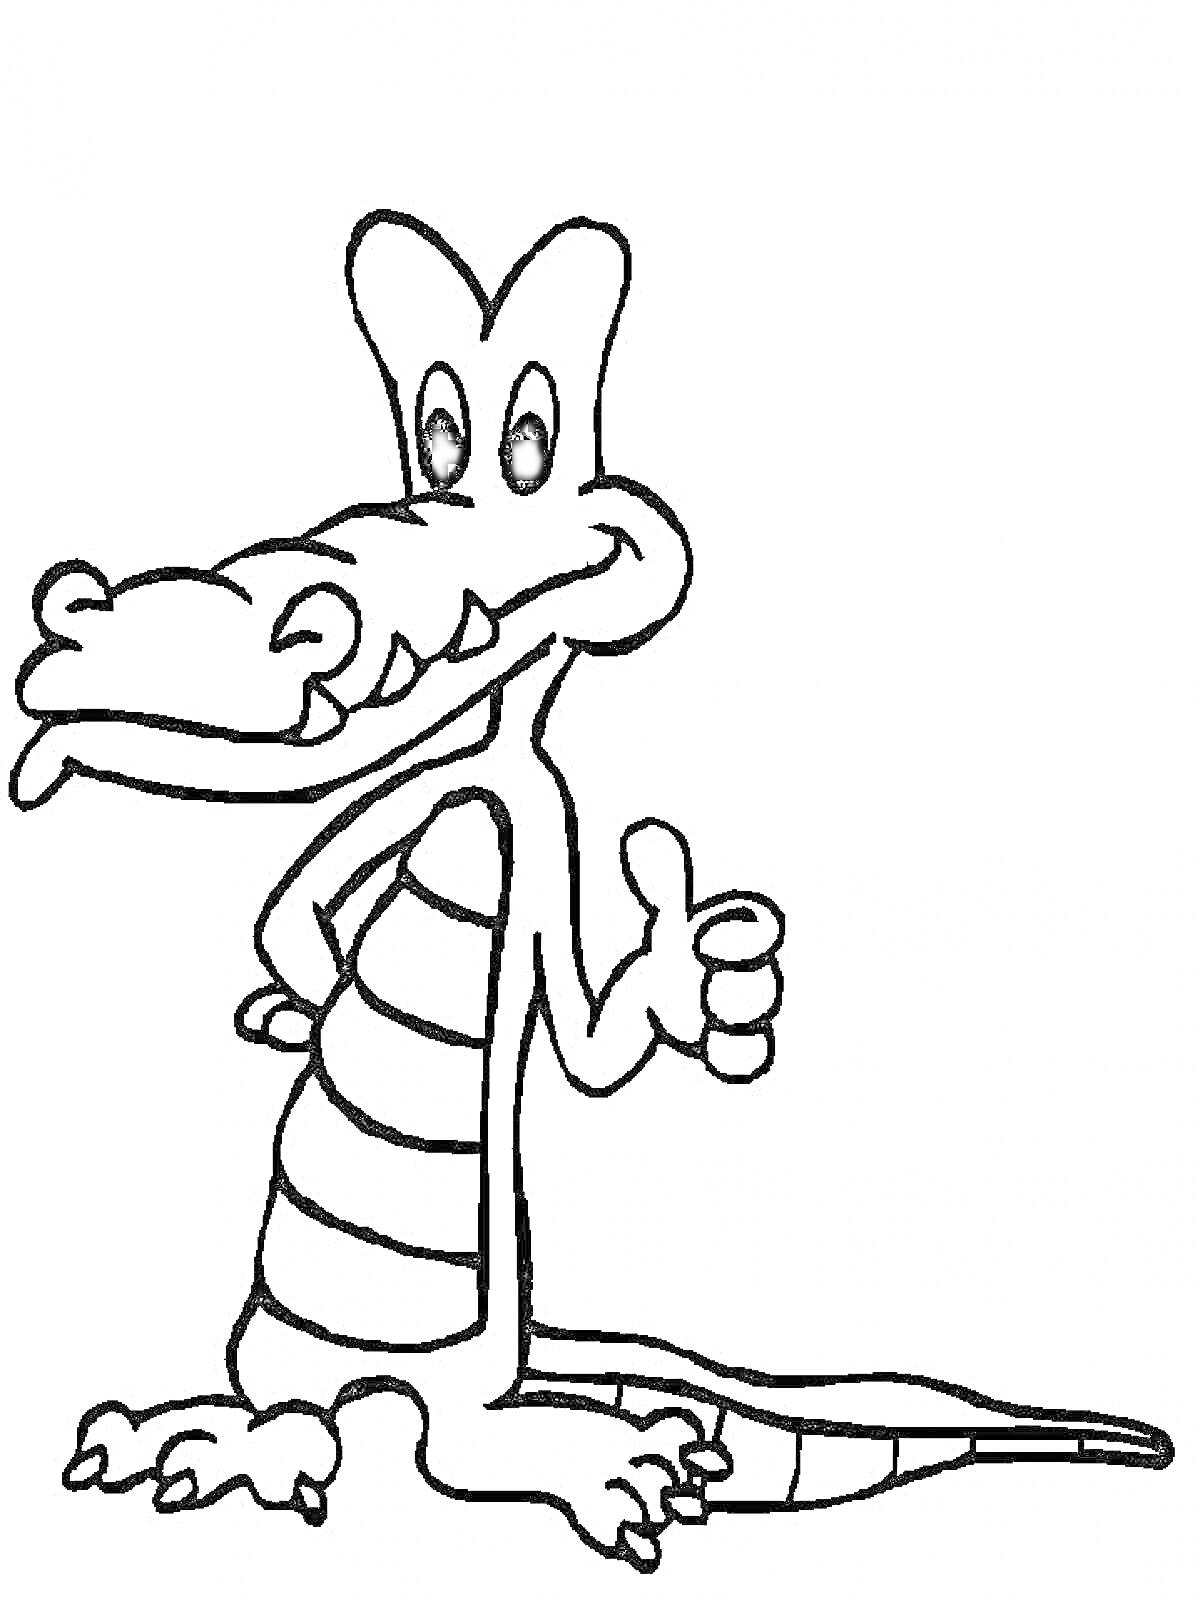 Раскраска Крокодил с улыбкой и поднятым пальцем